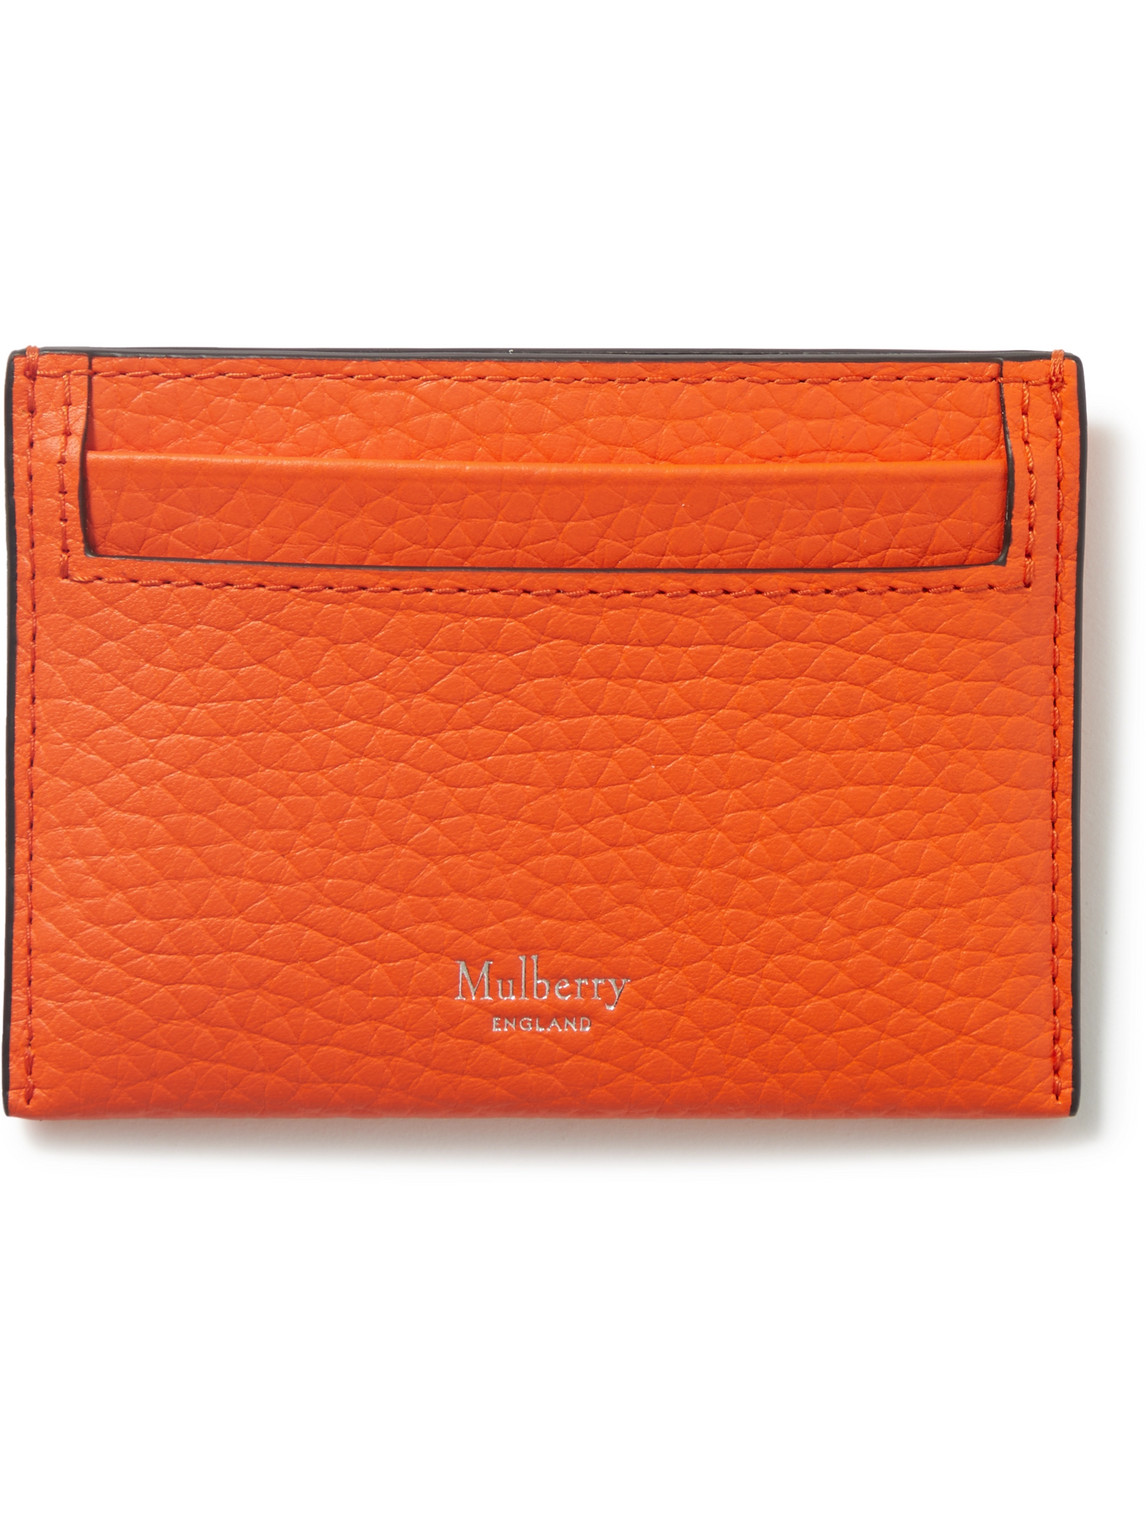 Mulberry - Full-Grain Leather Cardholder - Men - Orange